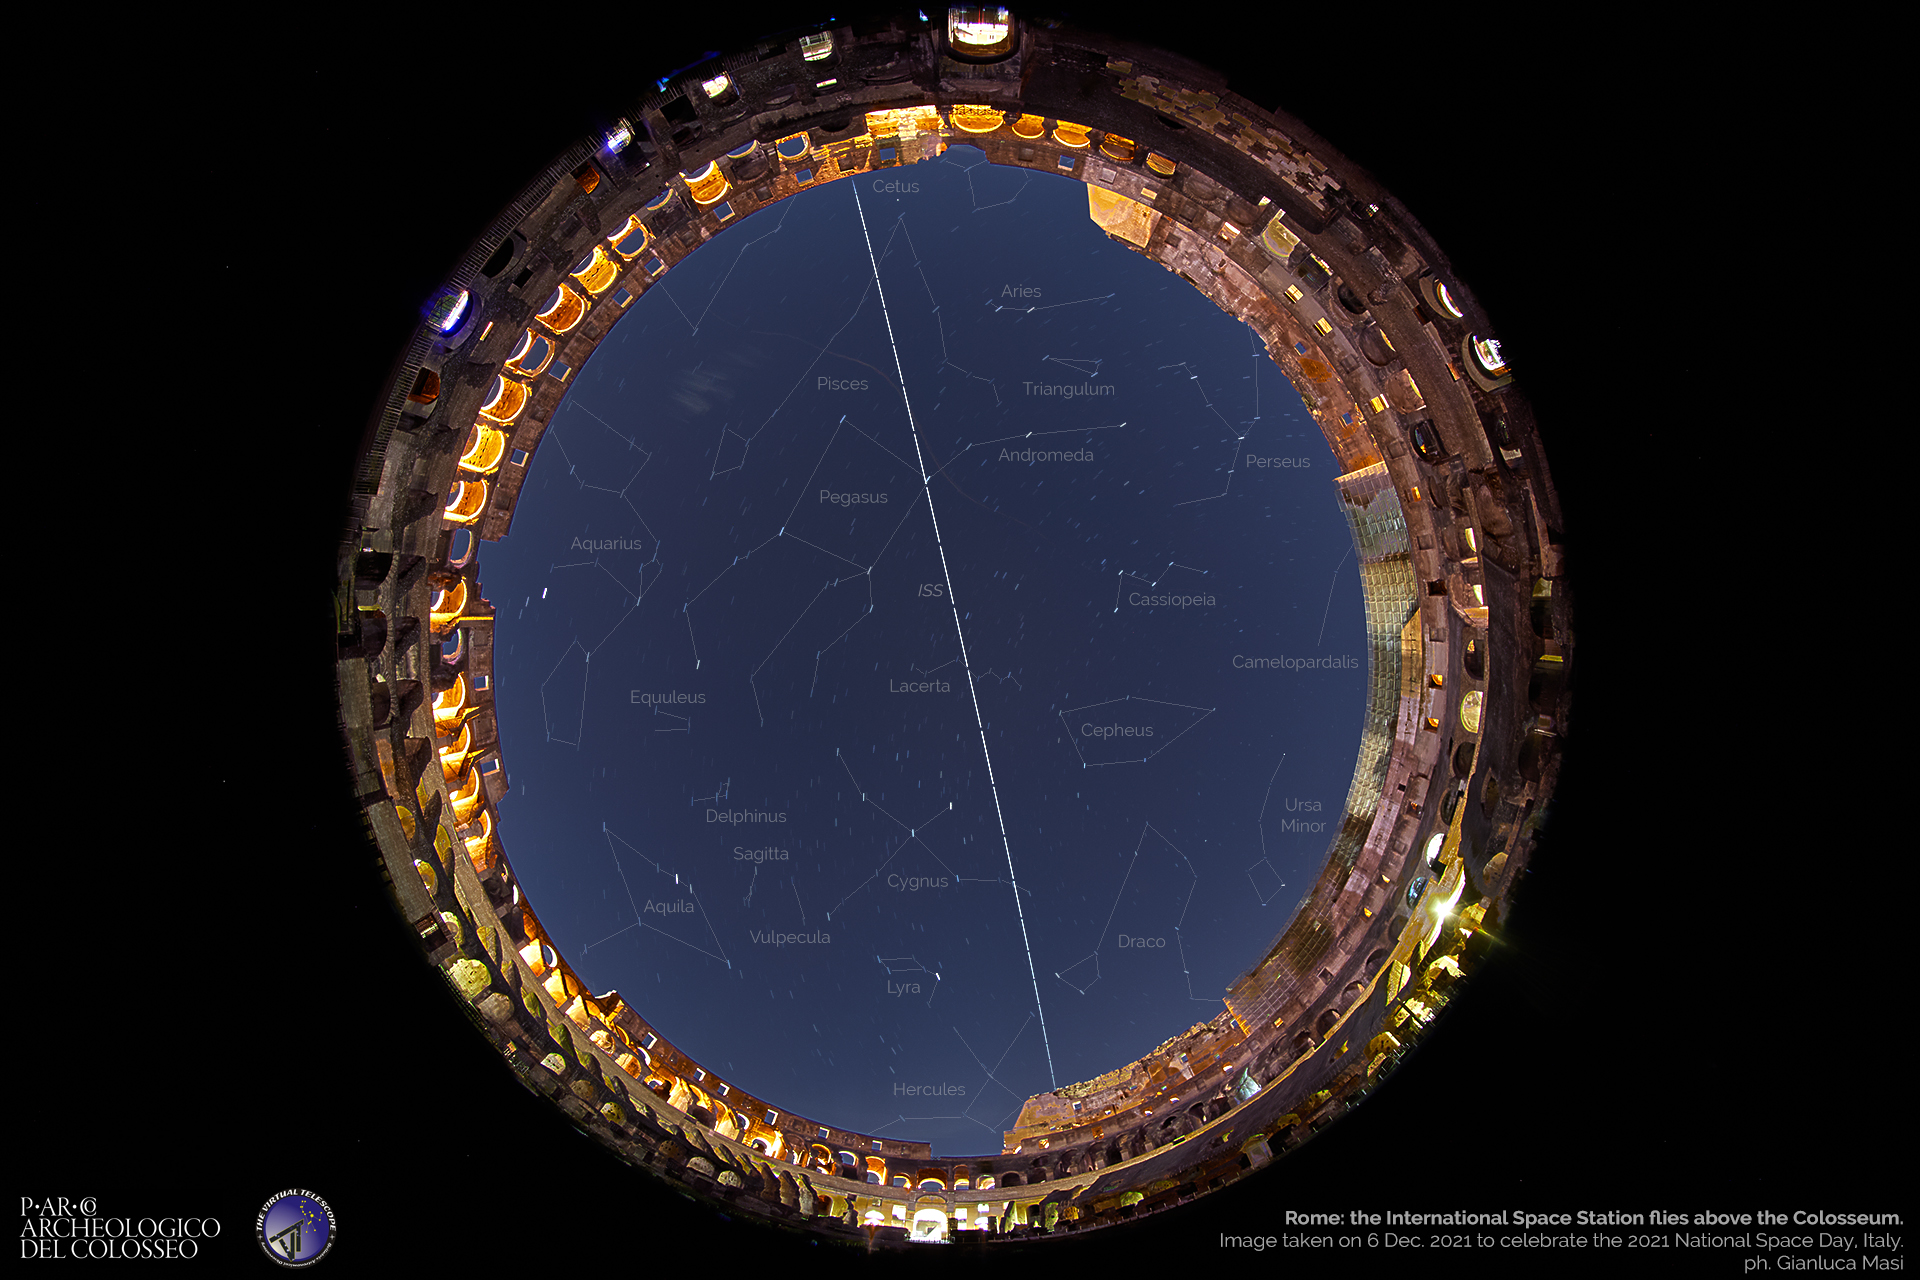 La Stazione Spaziale Internazionale attraversa le costellazioni che sovrastano il Colosseo. 6 dicembre 2021.